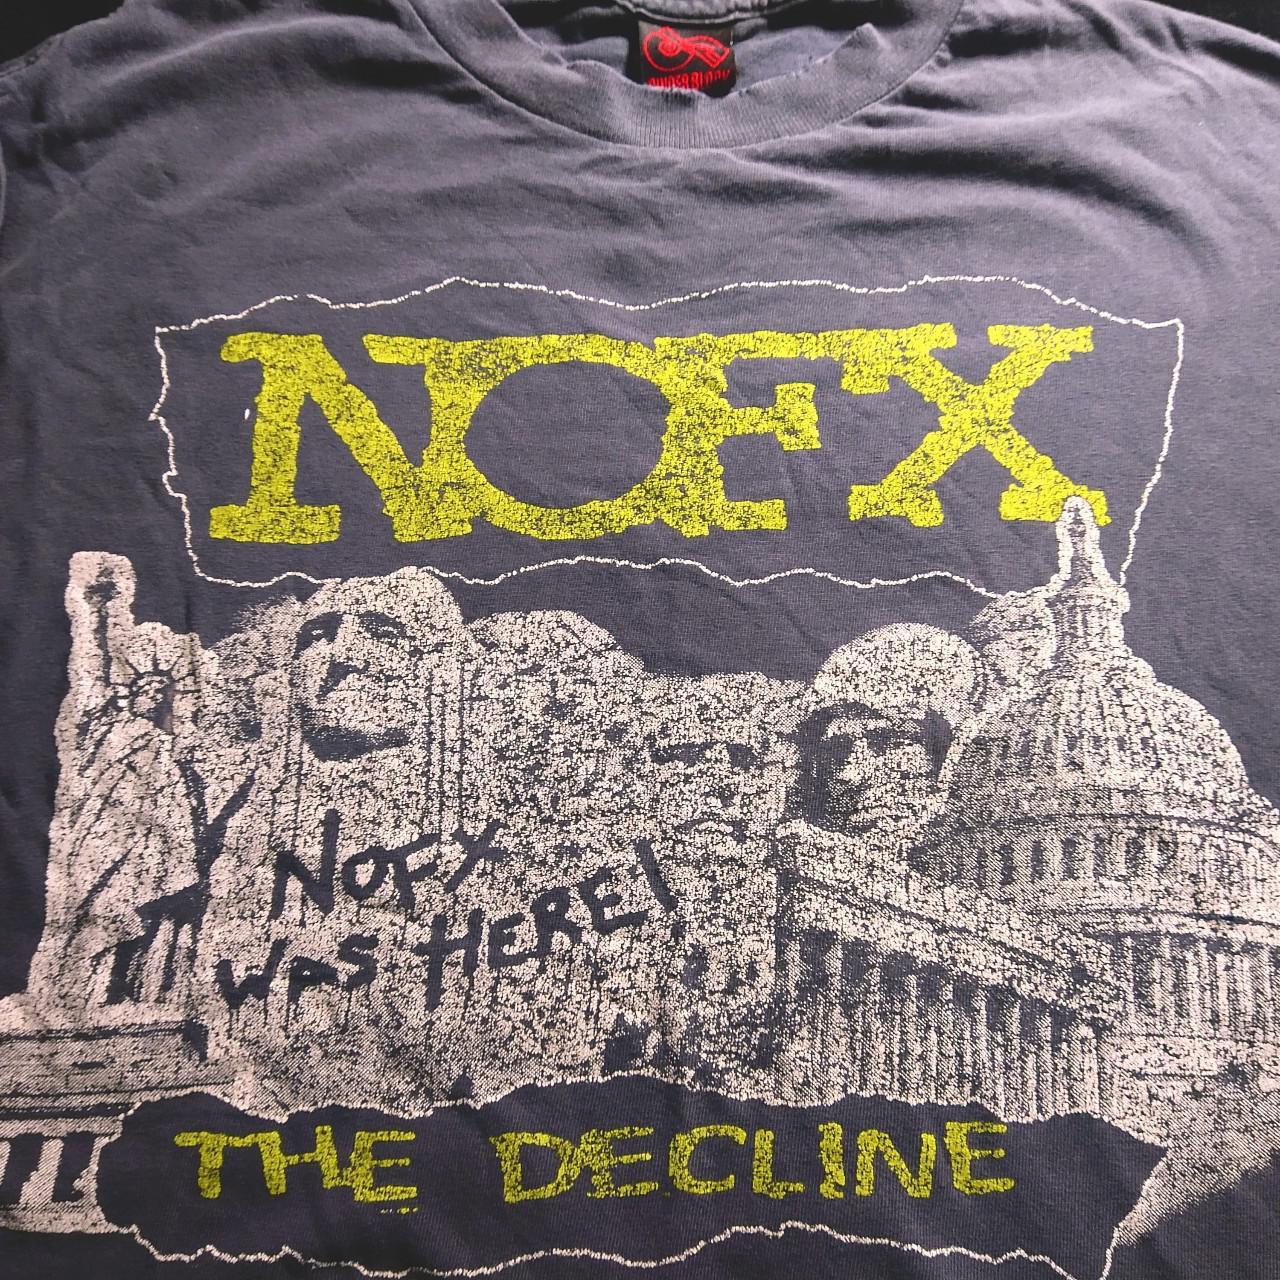 【最上級品】NOFX 2000 THE DECLINE CINDER BLOCK VINTAGE ノーエフエックス バンドTシャツ ブラック 00\'s ウ゛ィンテージ コピーライト Tシャツ